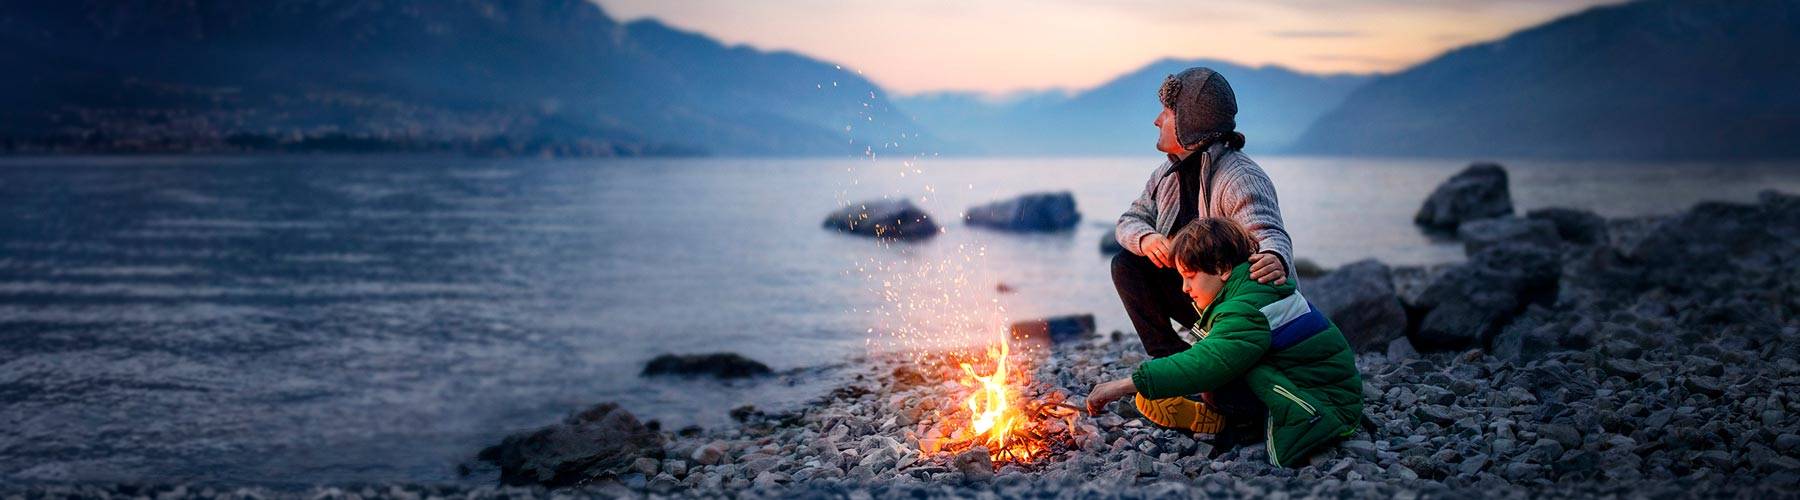 Imagen paisajística de dos personas disfrutando de un fuego junto al lago al atardecer